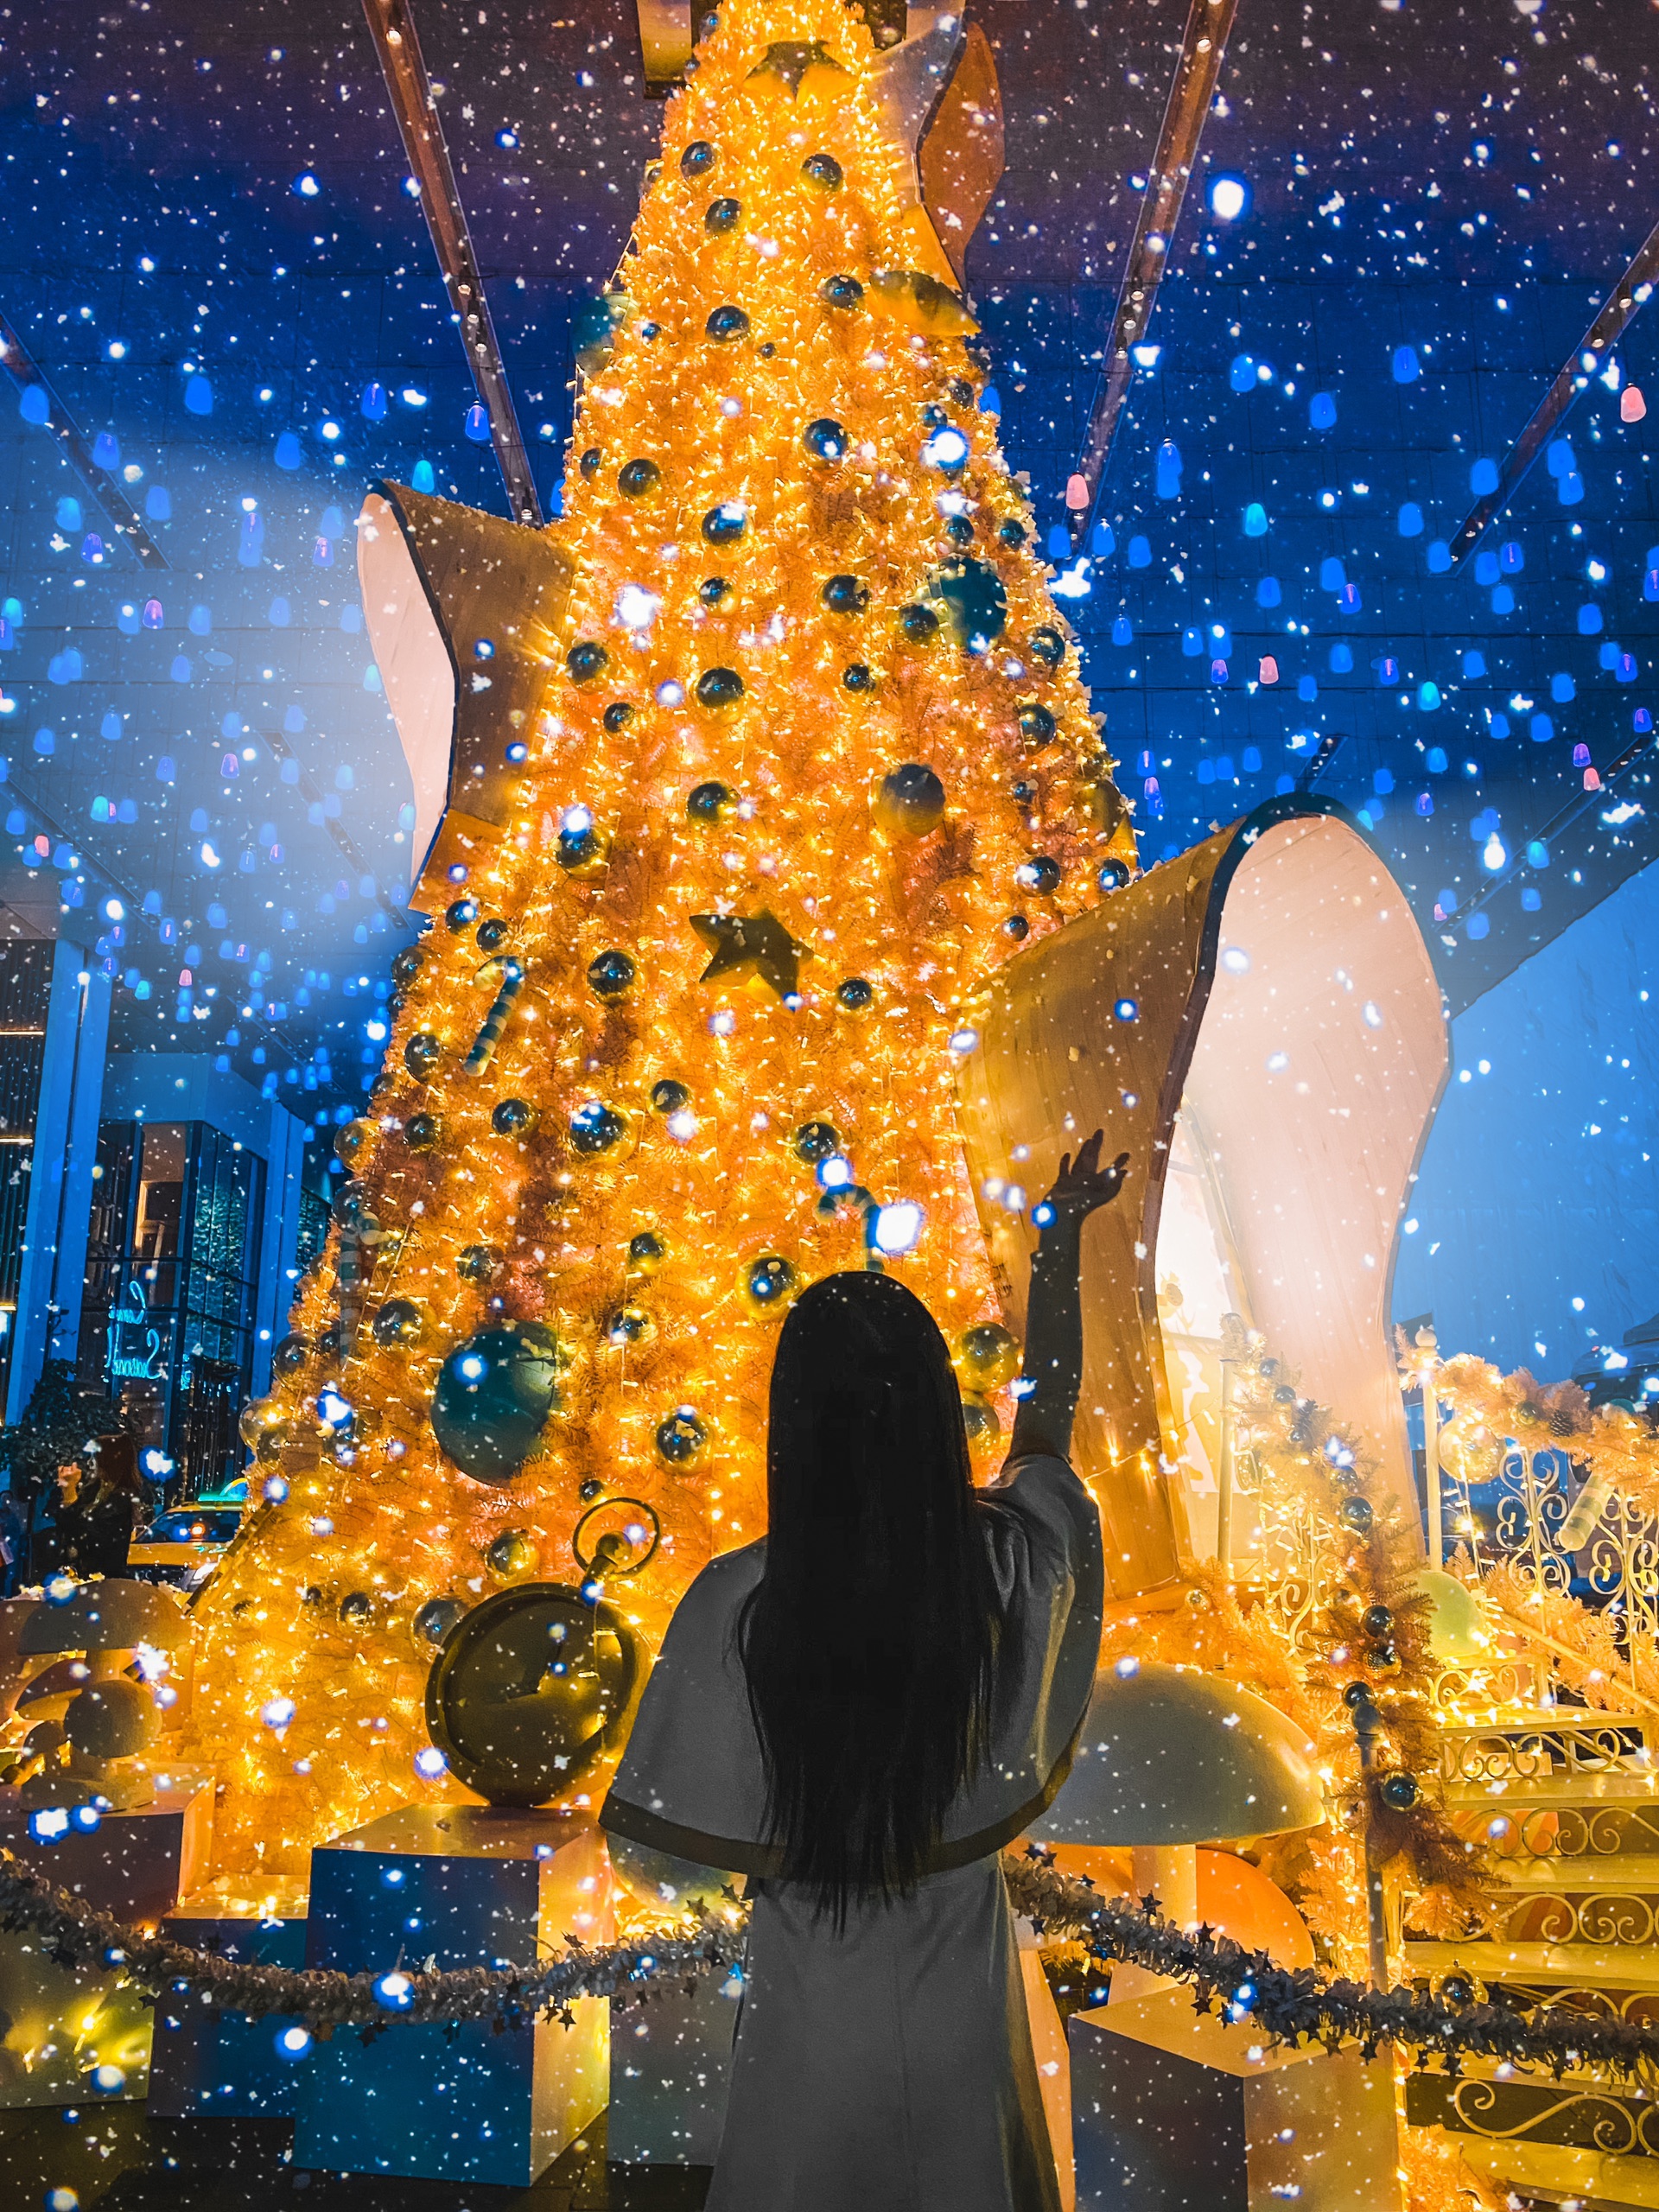 广州0元拍照地——藏在广州塔旁会下雪圣诞树